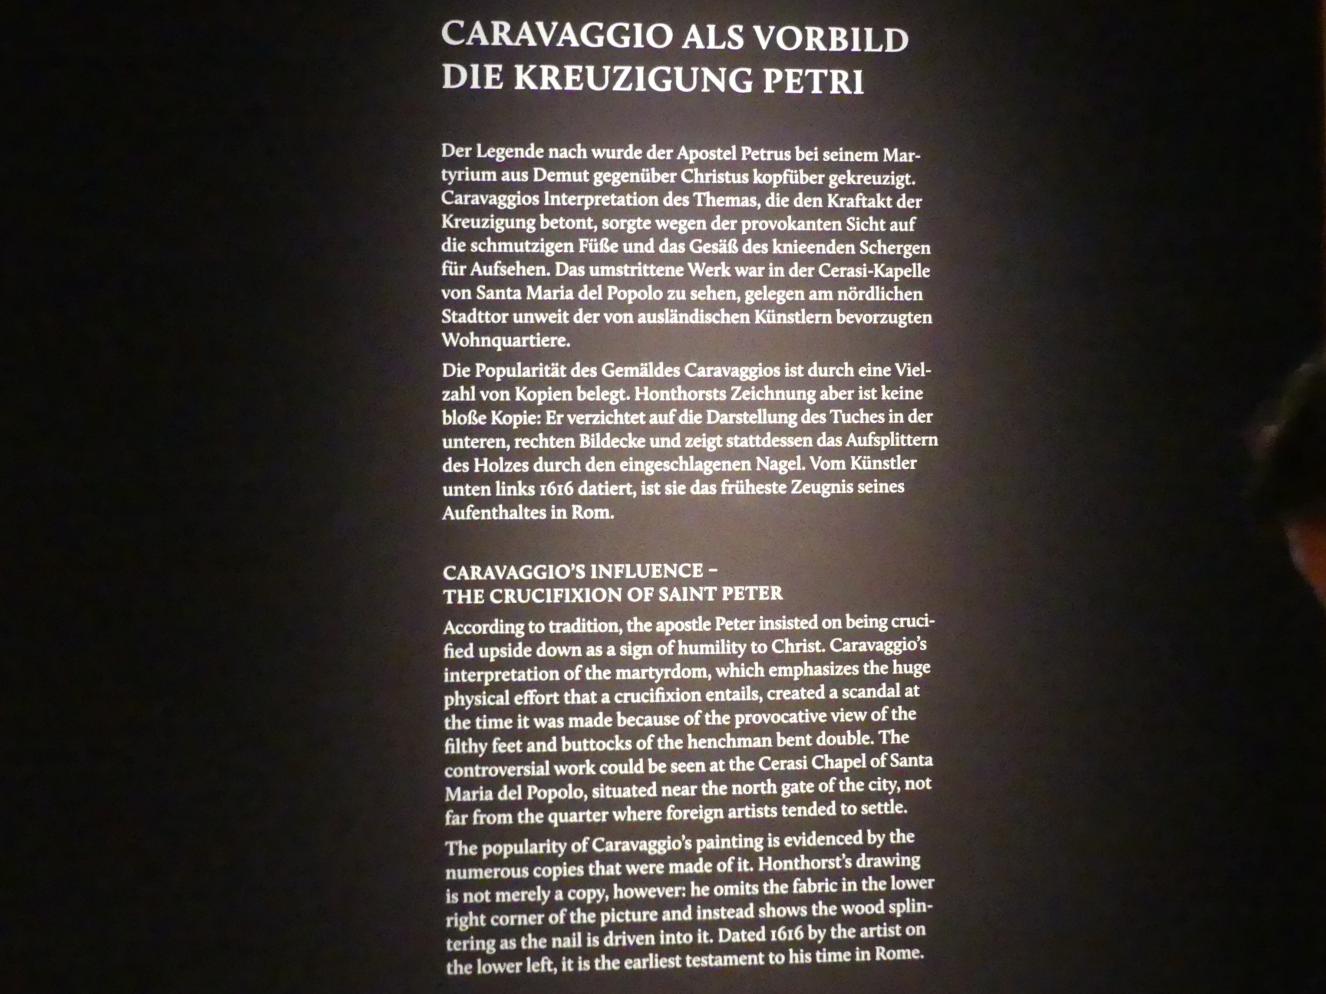 München, Alte Pinakothek, Ausstellung "Utrecht, Caravaggio und Europa" vom 17.04.-21.07.2019, Einleitung: Kreuzigung Petri